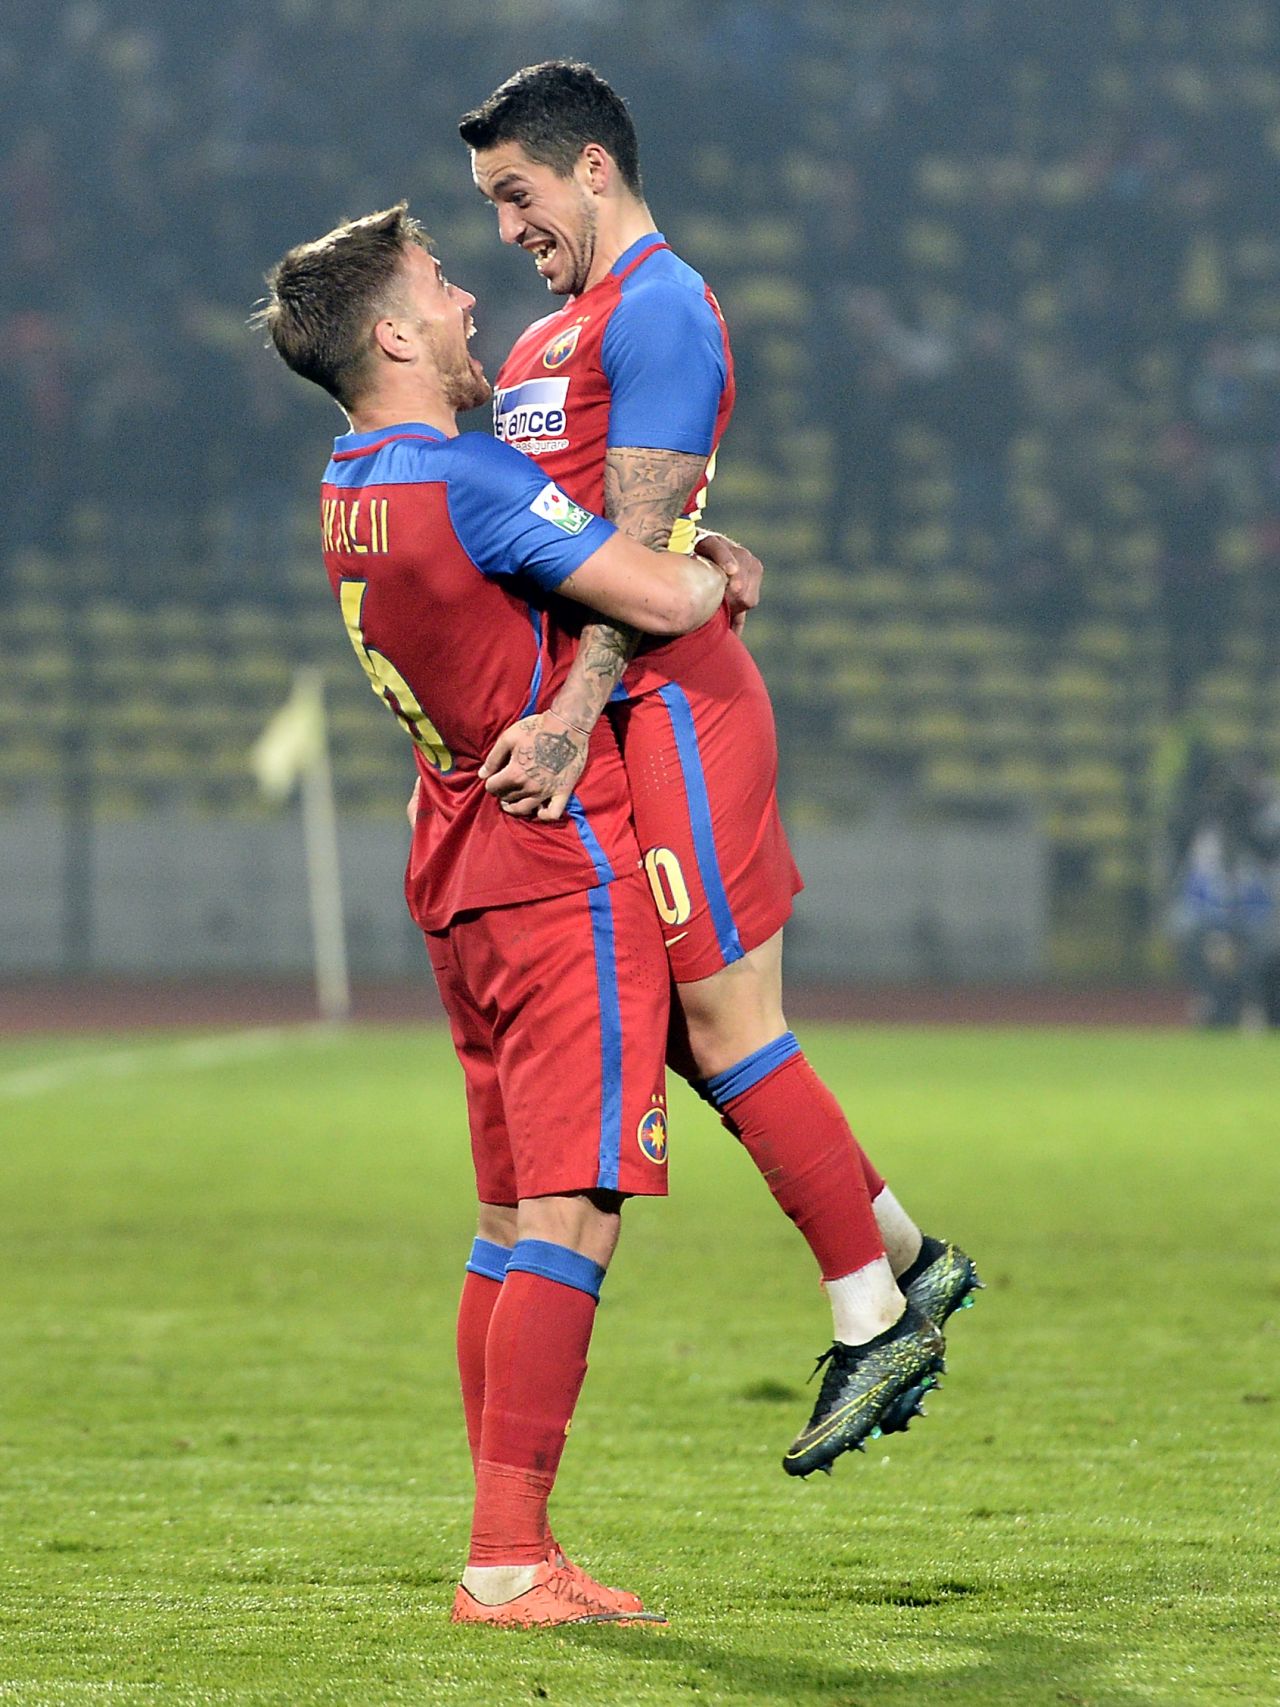 Fotbalistul care l-a lăsat mască pe Mihai Pintilii: ”Dădeam în el și mă durea pe mine”_7